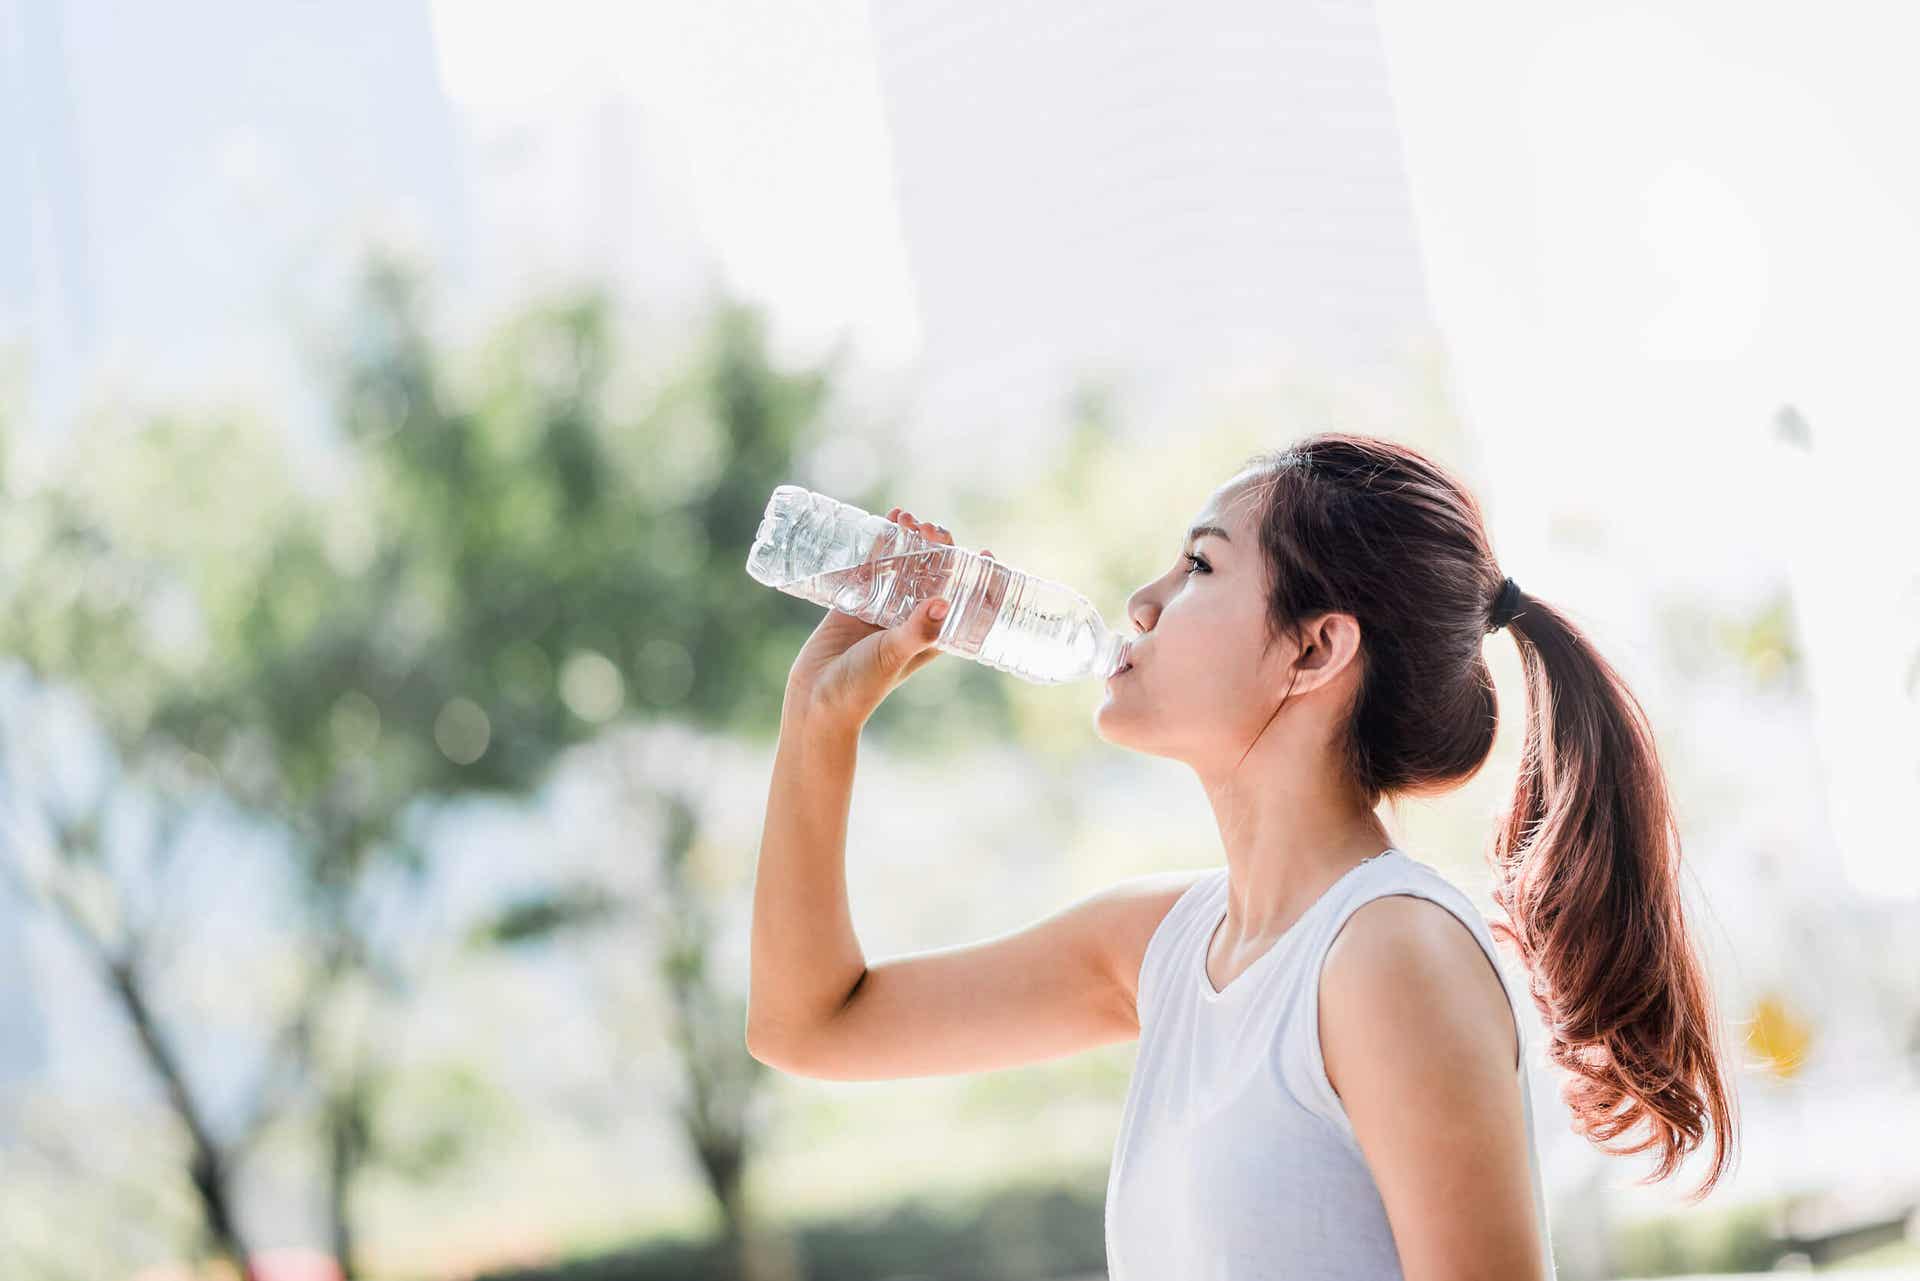 Tomar agua durante el ejercicio es vital.